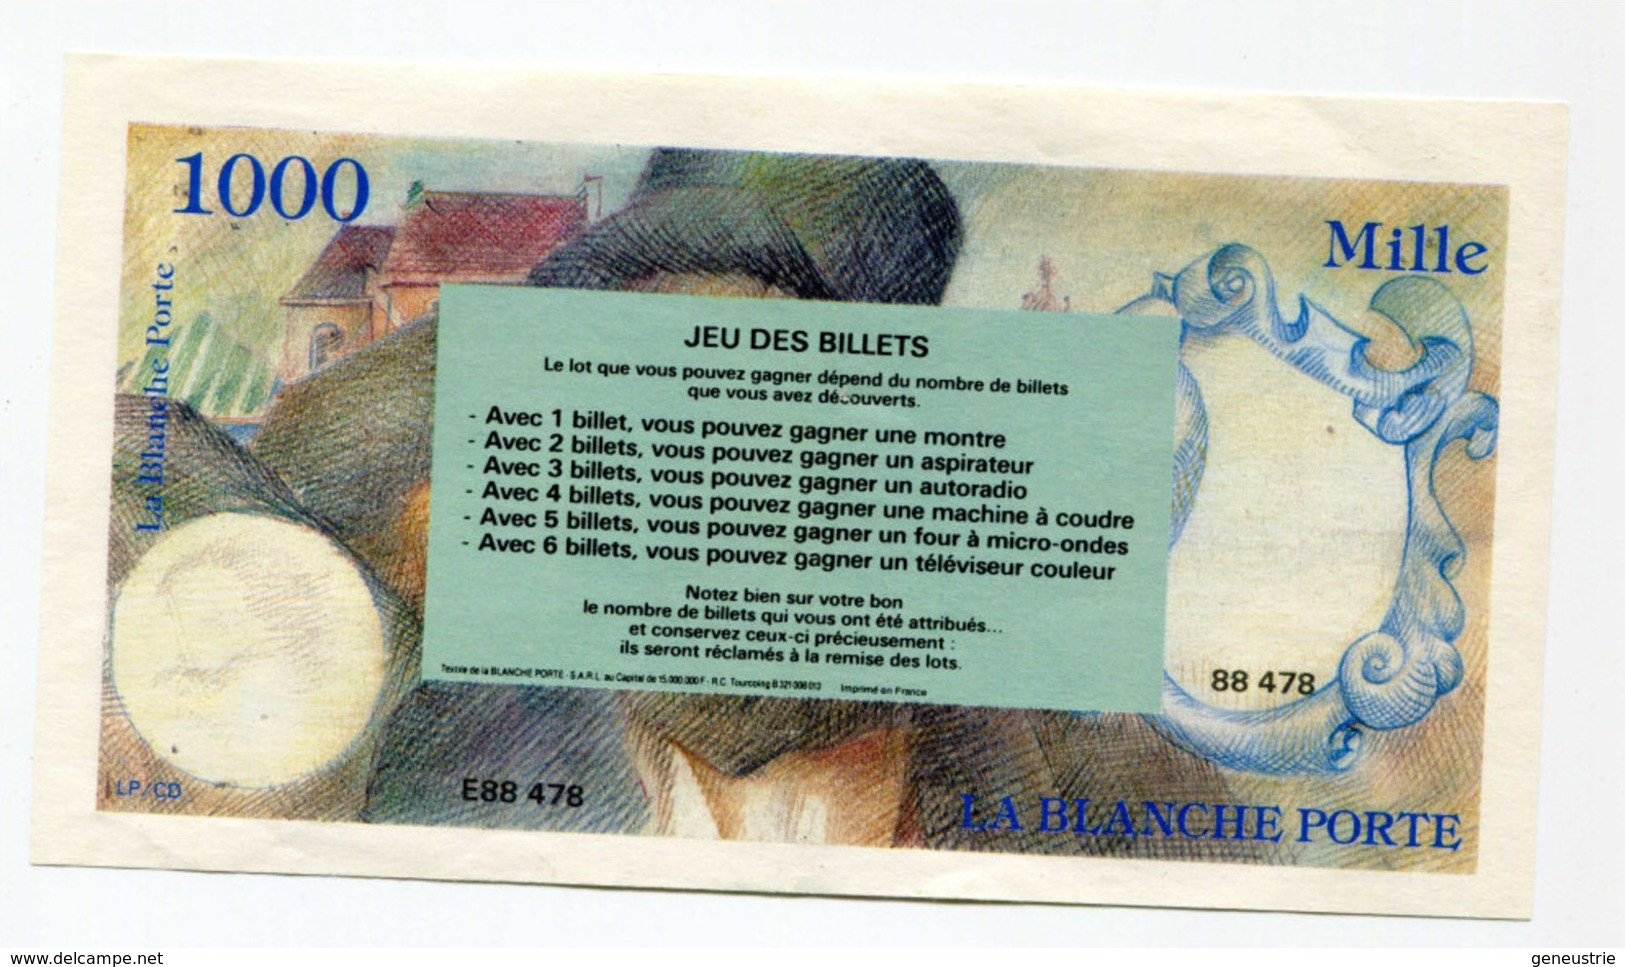 Billet Publicitaire De 1000 Francs Inspiré De Delacroix "La Blanche Porte" French Bank Note - Fictifs & Spécimens